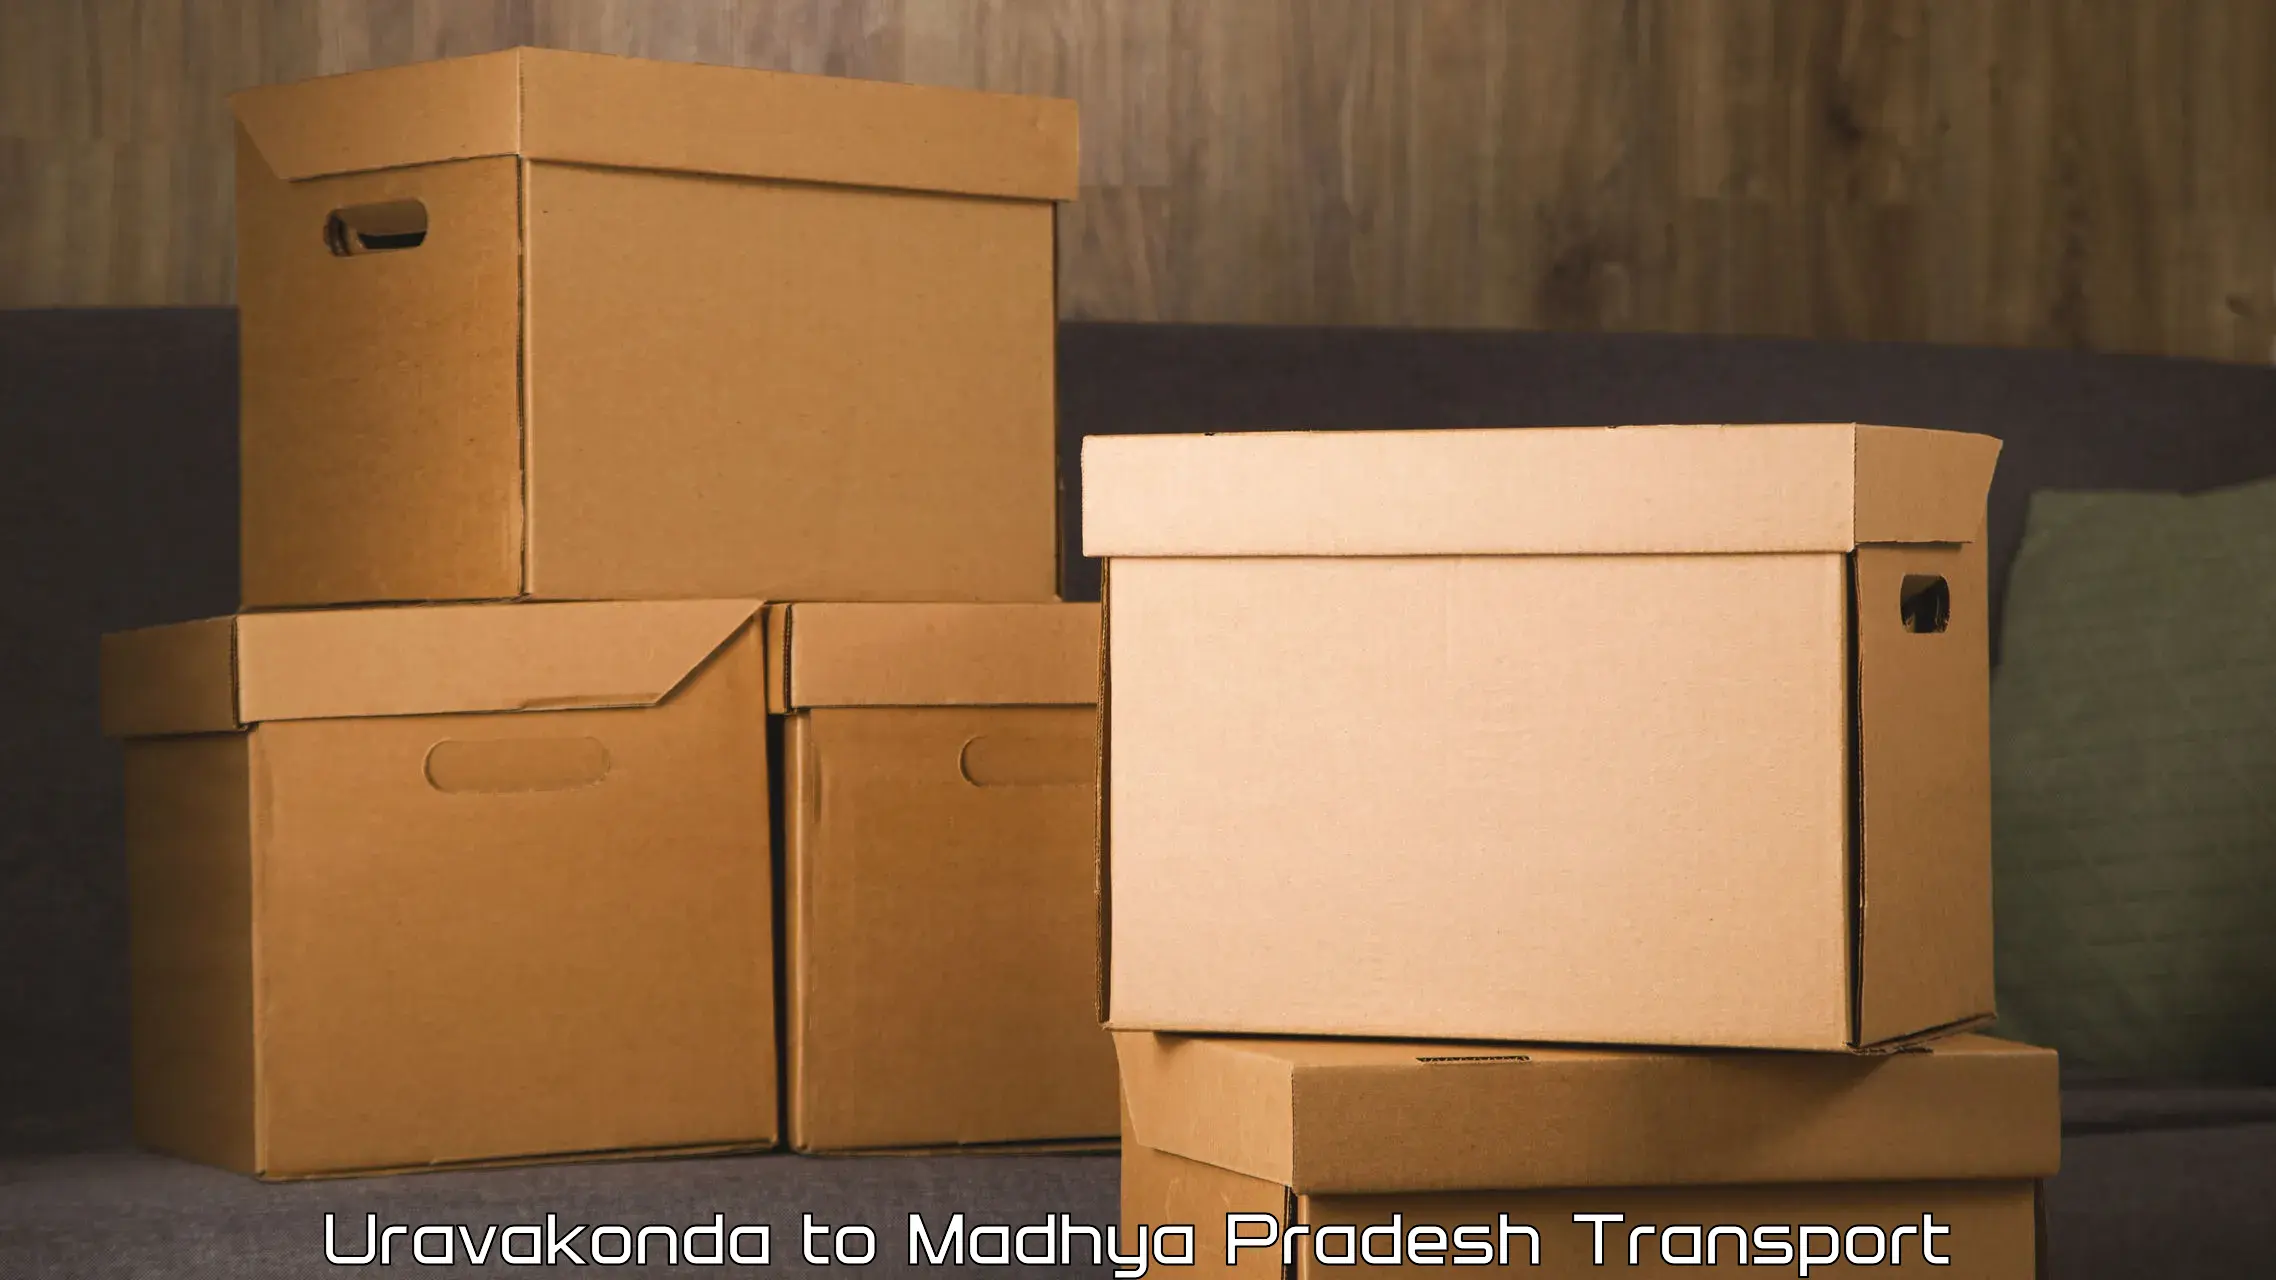 Container transport service Uravakonda to Harda